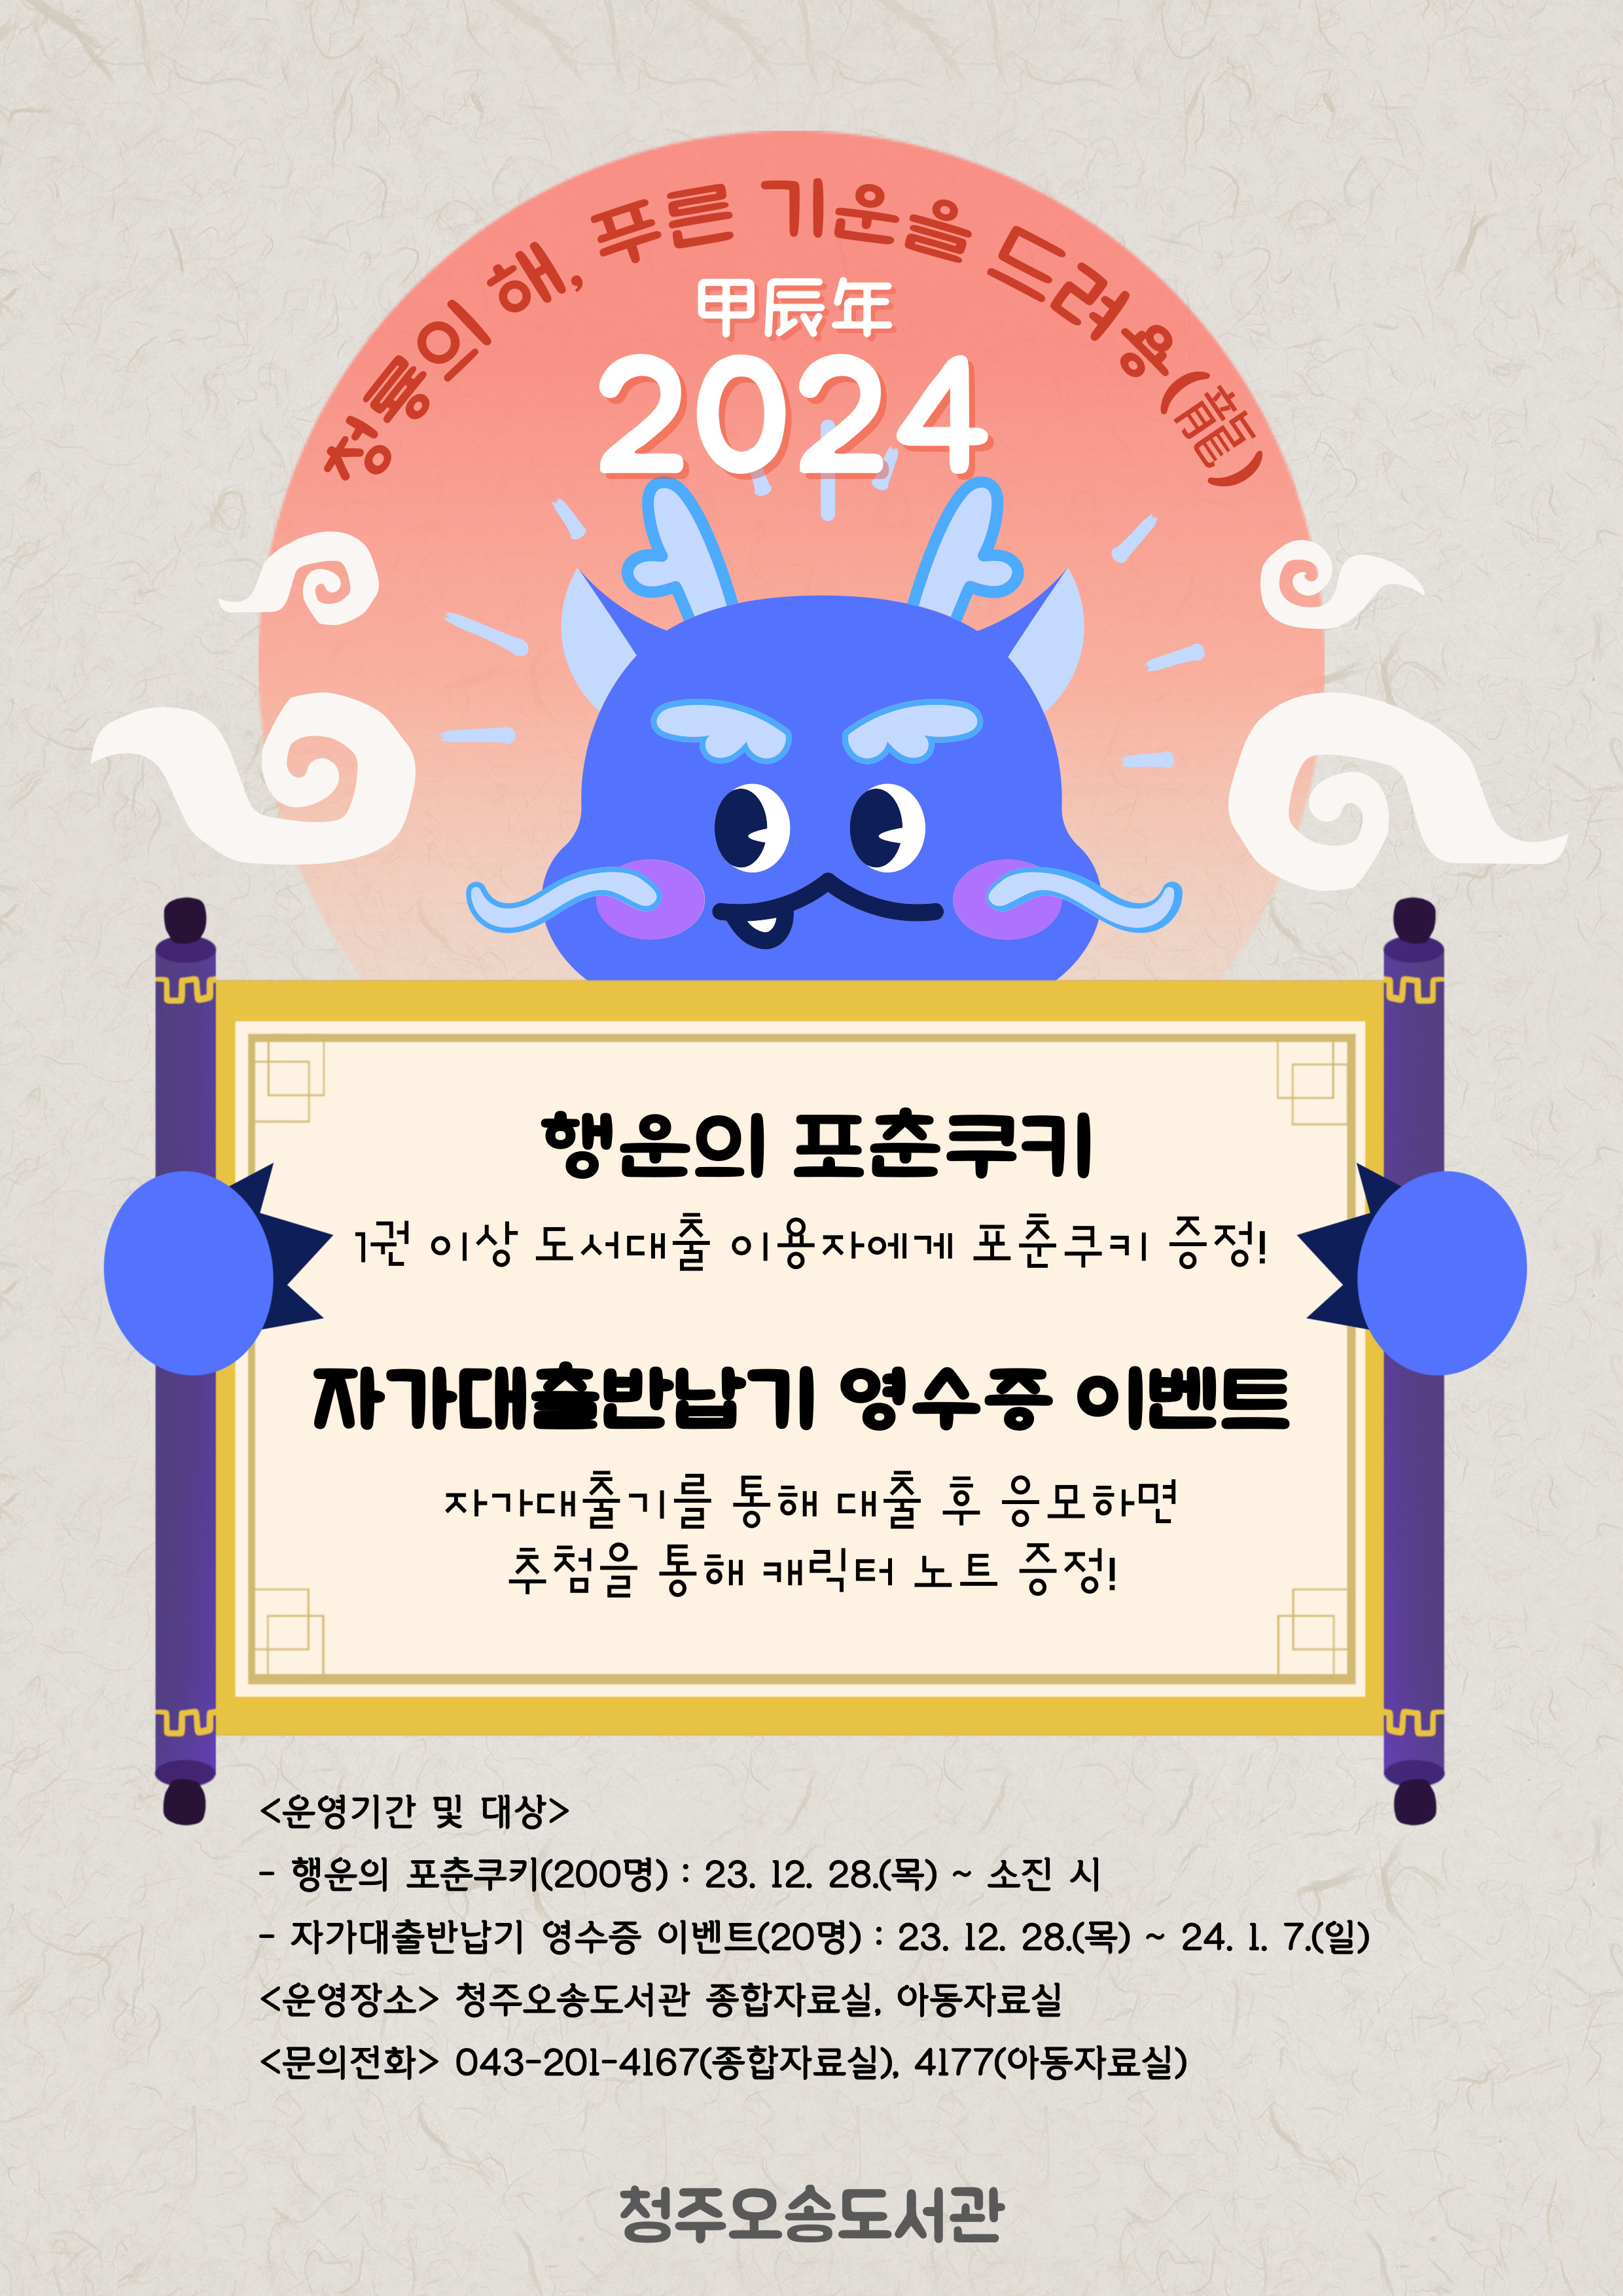 [오송도서관] 새해 이벤트 <청룡의 해, 푸른 기운을 드려용>